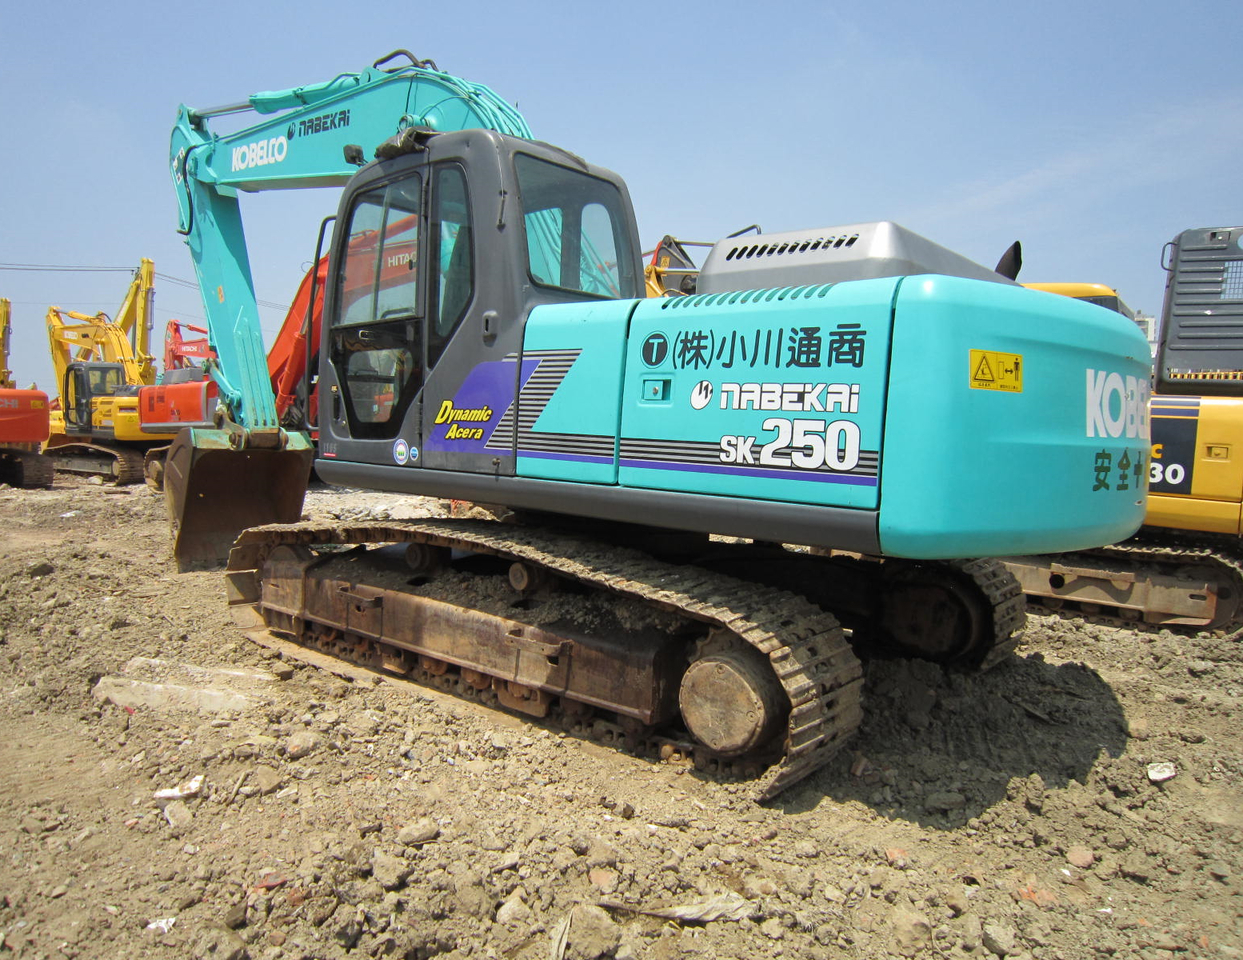 Kobelco SK250D second-hand excavator